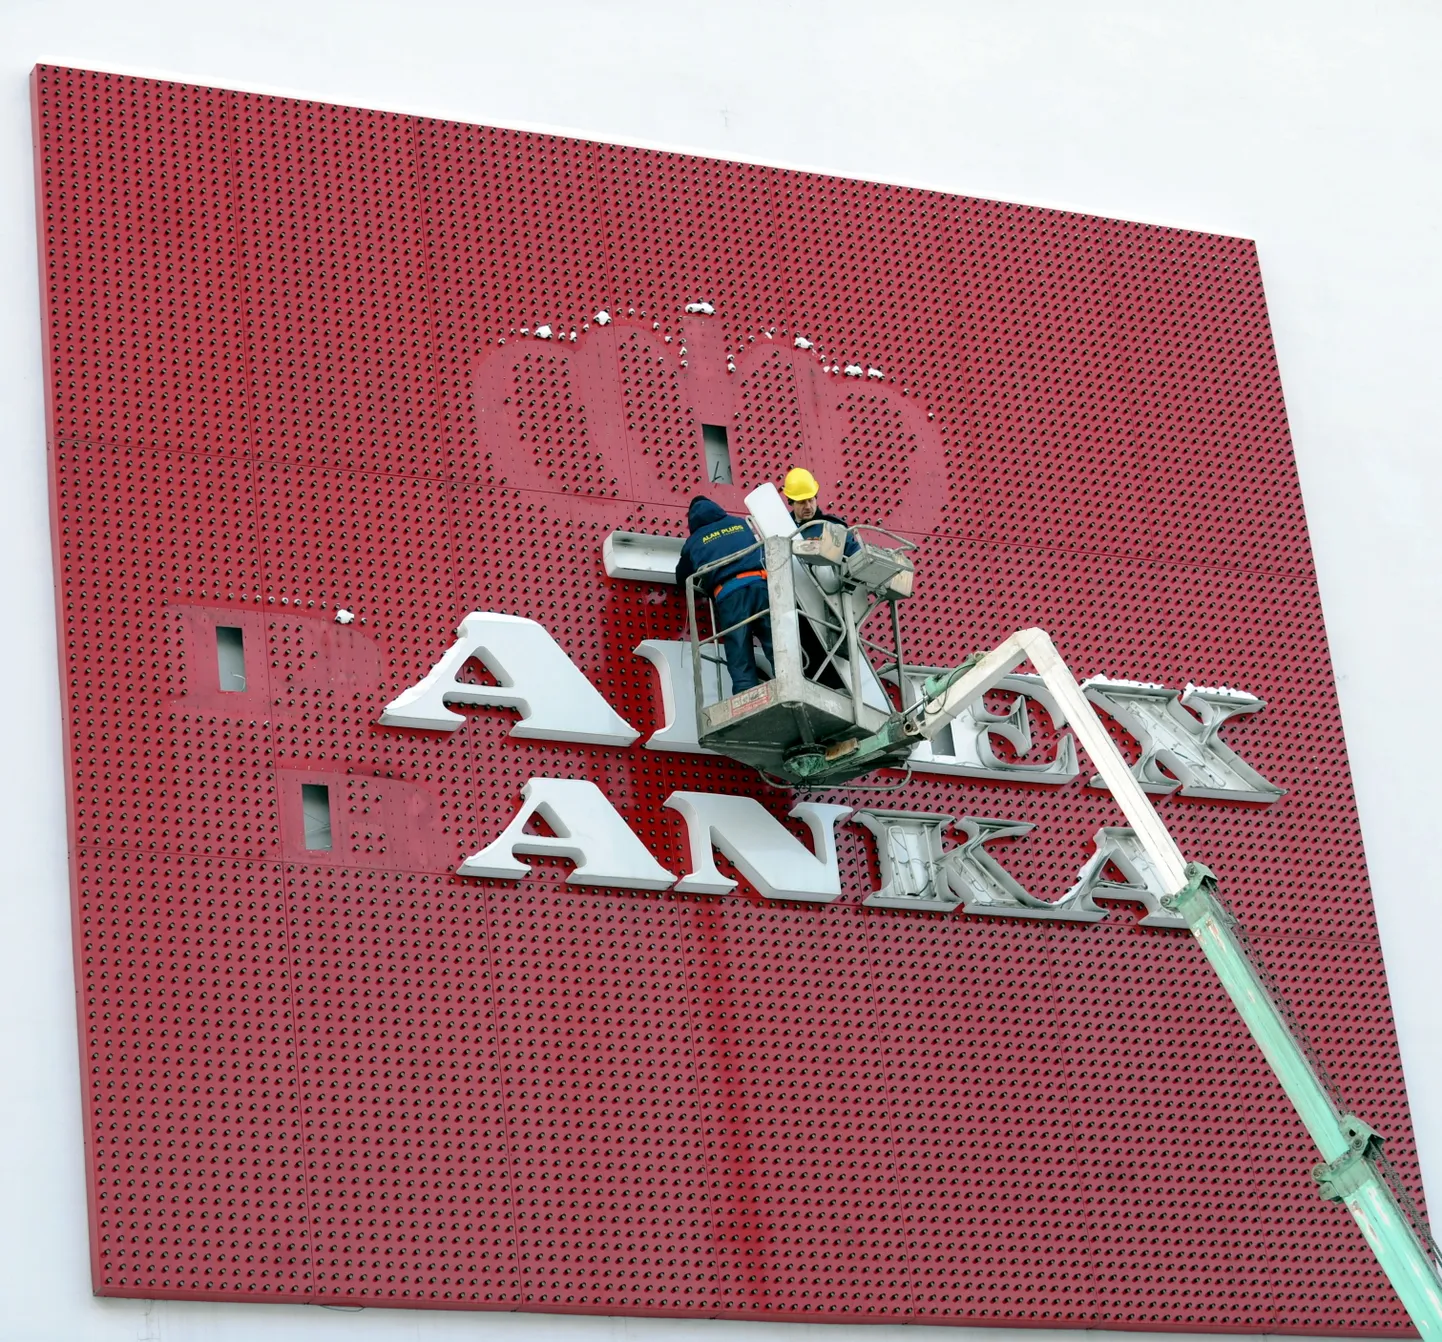 Рекламу "Parex banka" снимают со стены здания